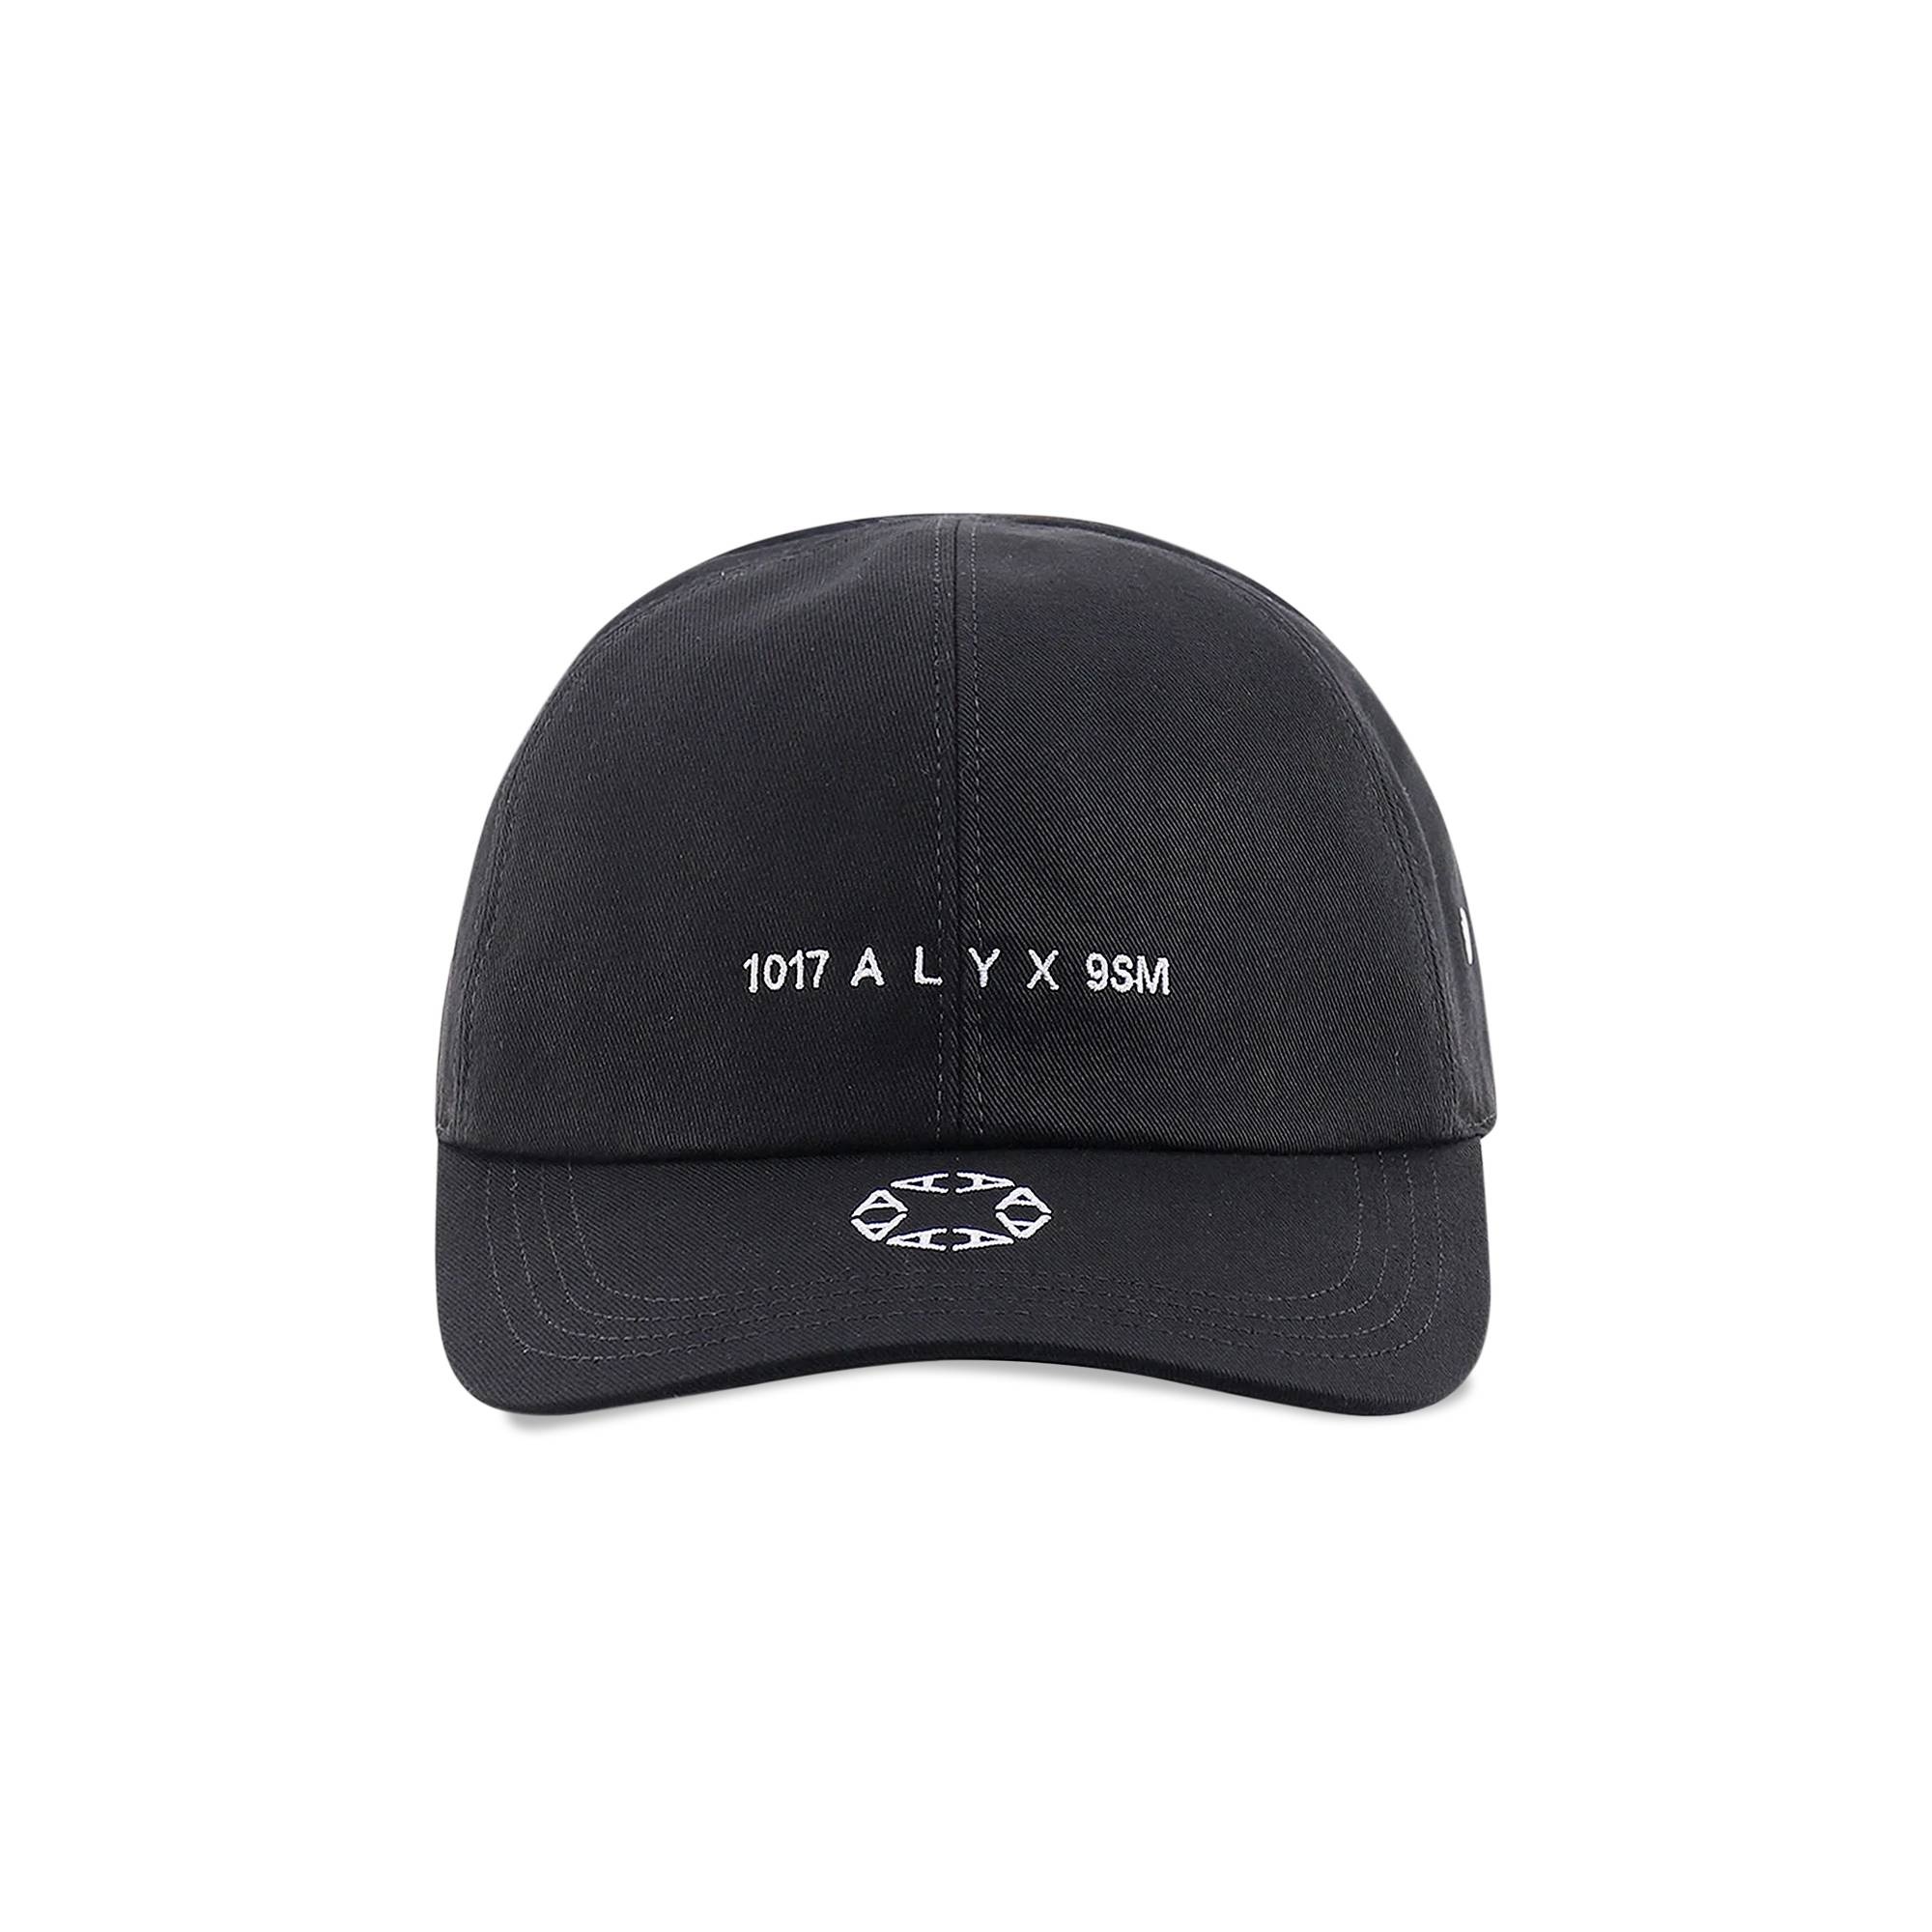 1017 ALYX 9SM Logo Hat 'Black' - 1